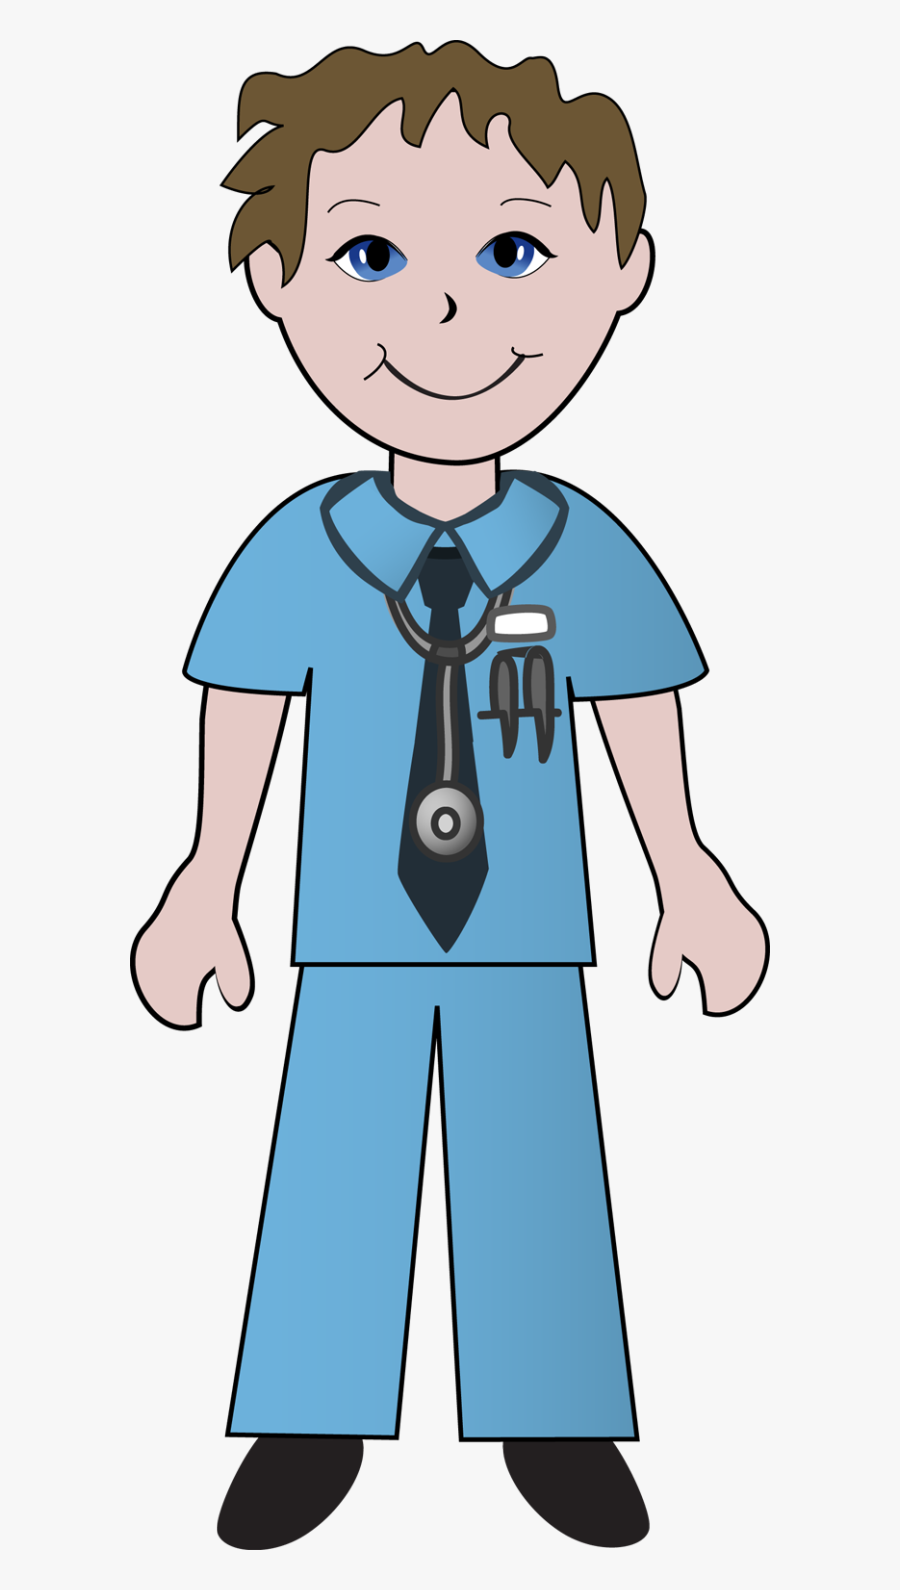 Nursing Nurse Clipart Free Clip Art Images Image 3 - Doctor And Nurse Clipart, Transparent Clipart